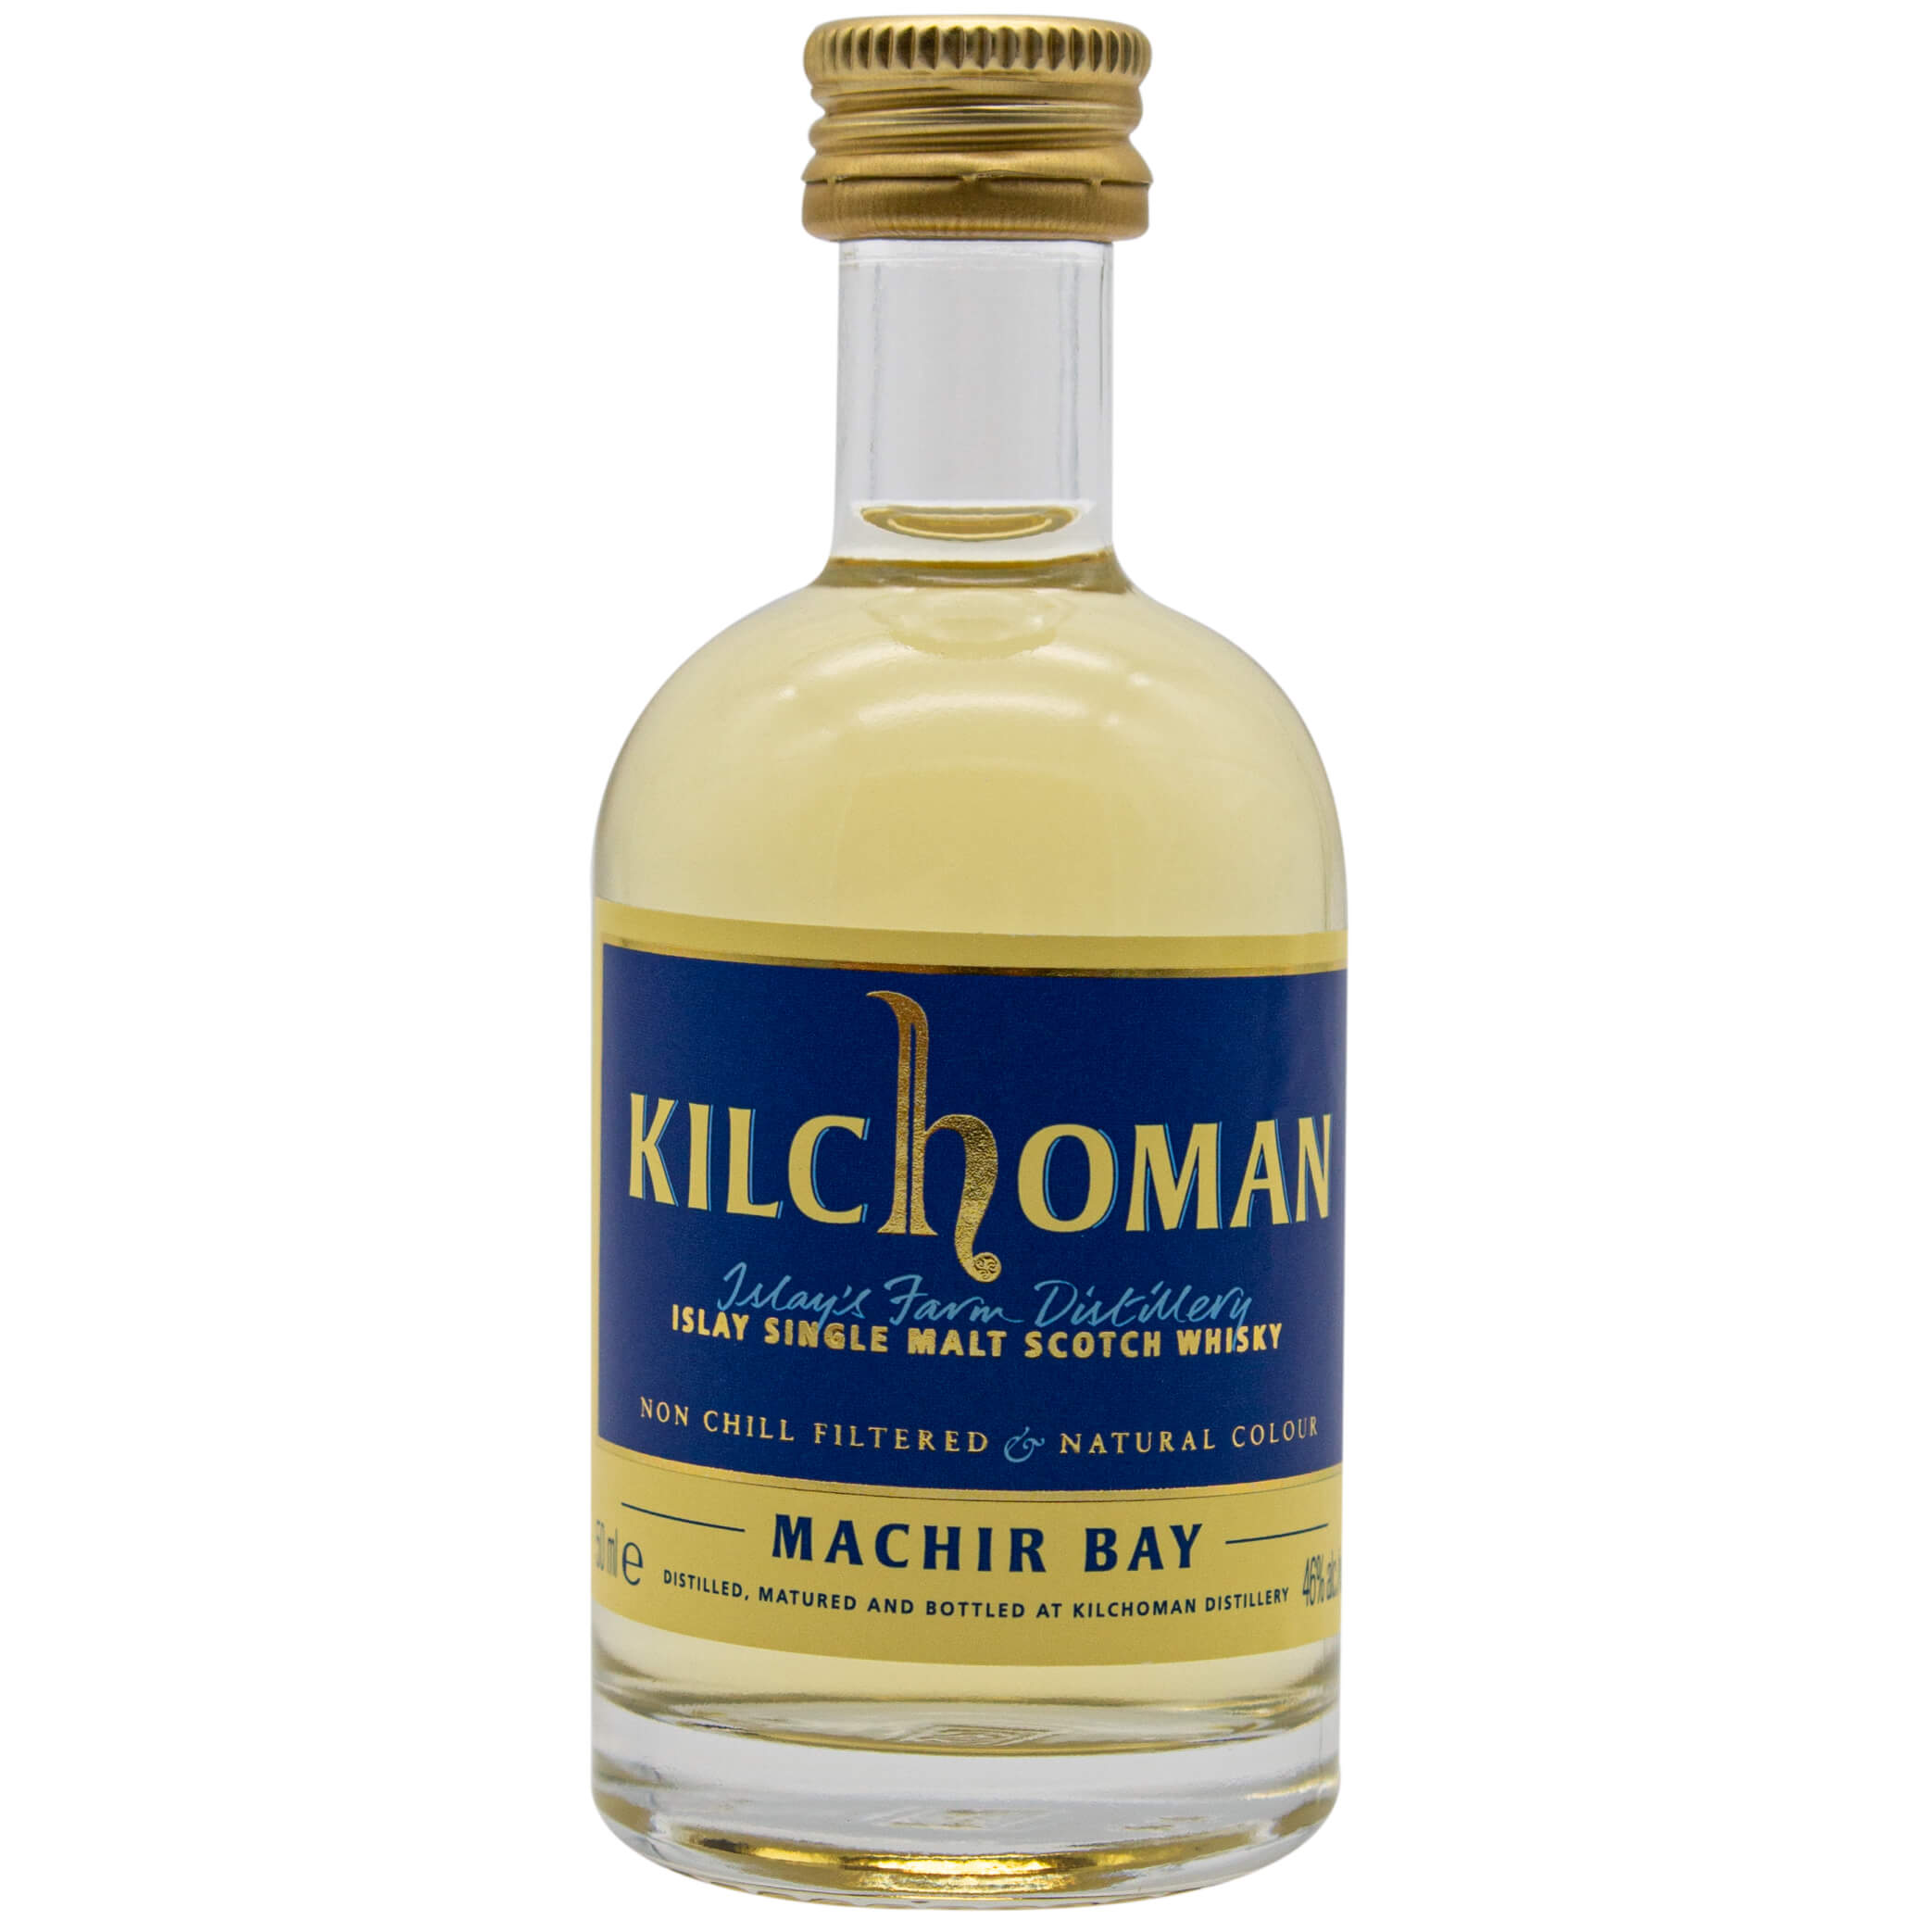 Kilchoman Machir Bay Miniatur Islay Single Malt Scotch Whisky